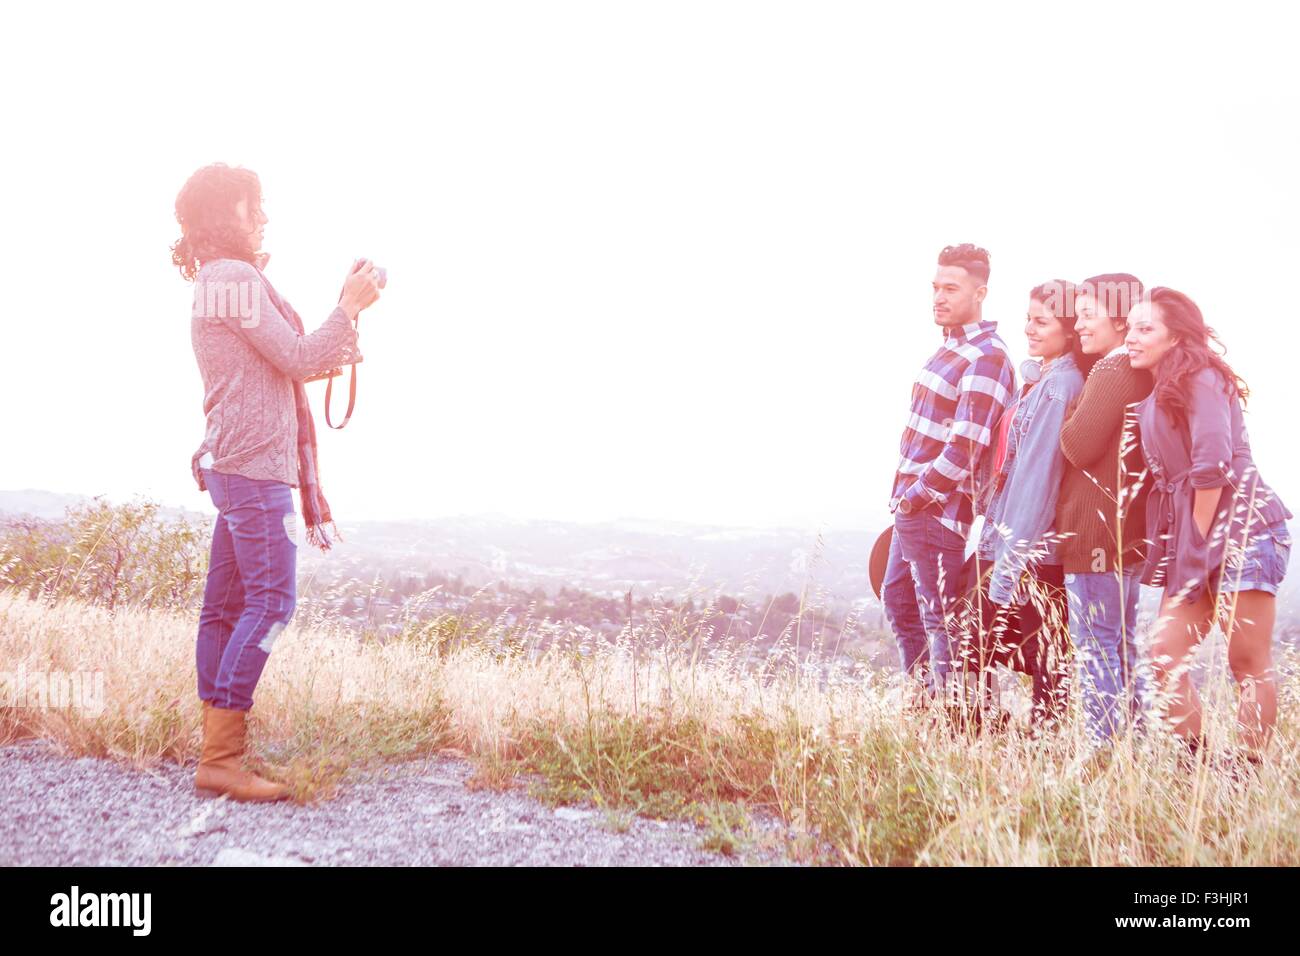 Junge Frau fotografieren ihre vier Erwachsenen Geschwistern auf ländlichen Hügel Stockfoto